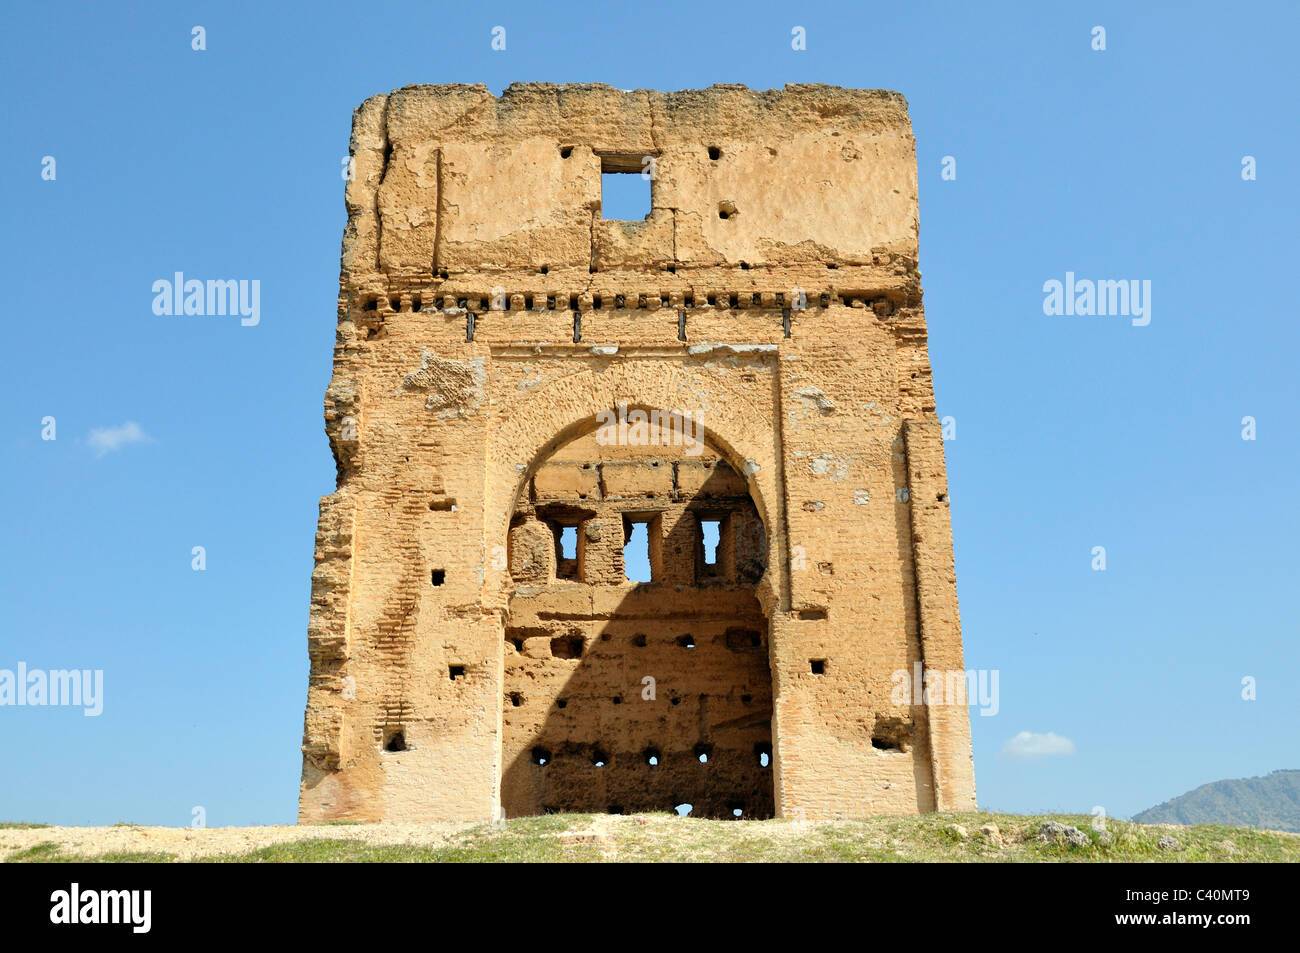 Architektur, Fes, Hochbau, Marokko, Ruinen Stockfoto